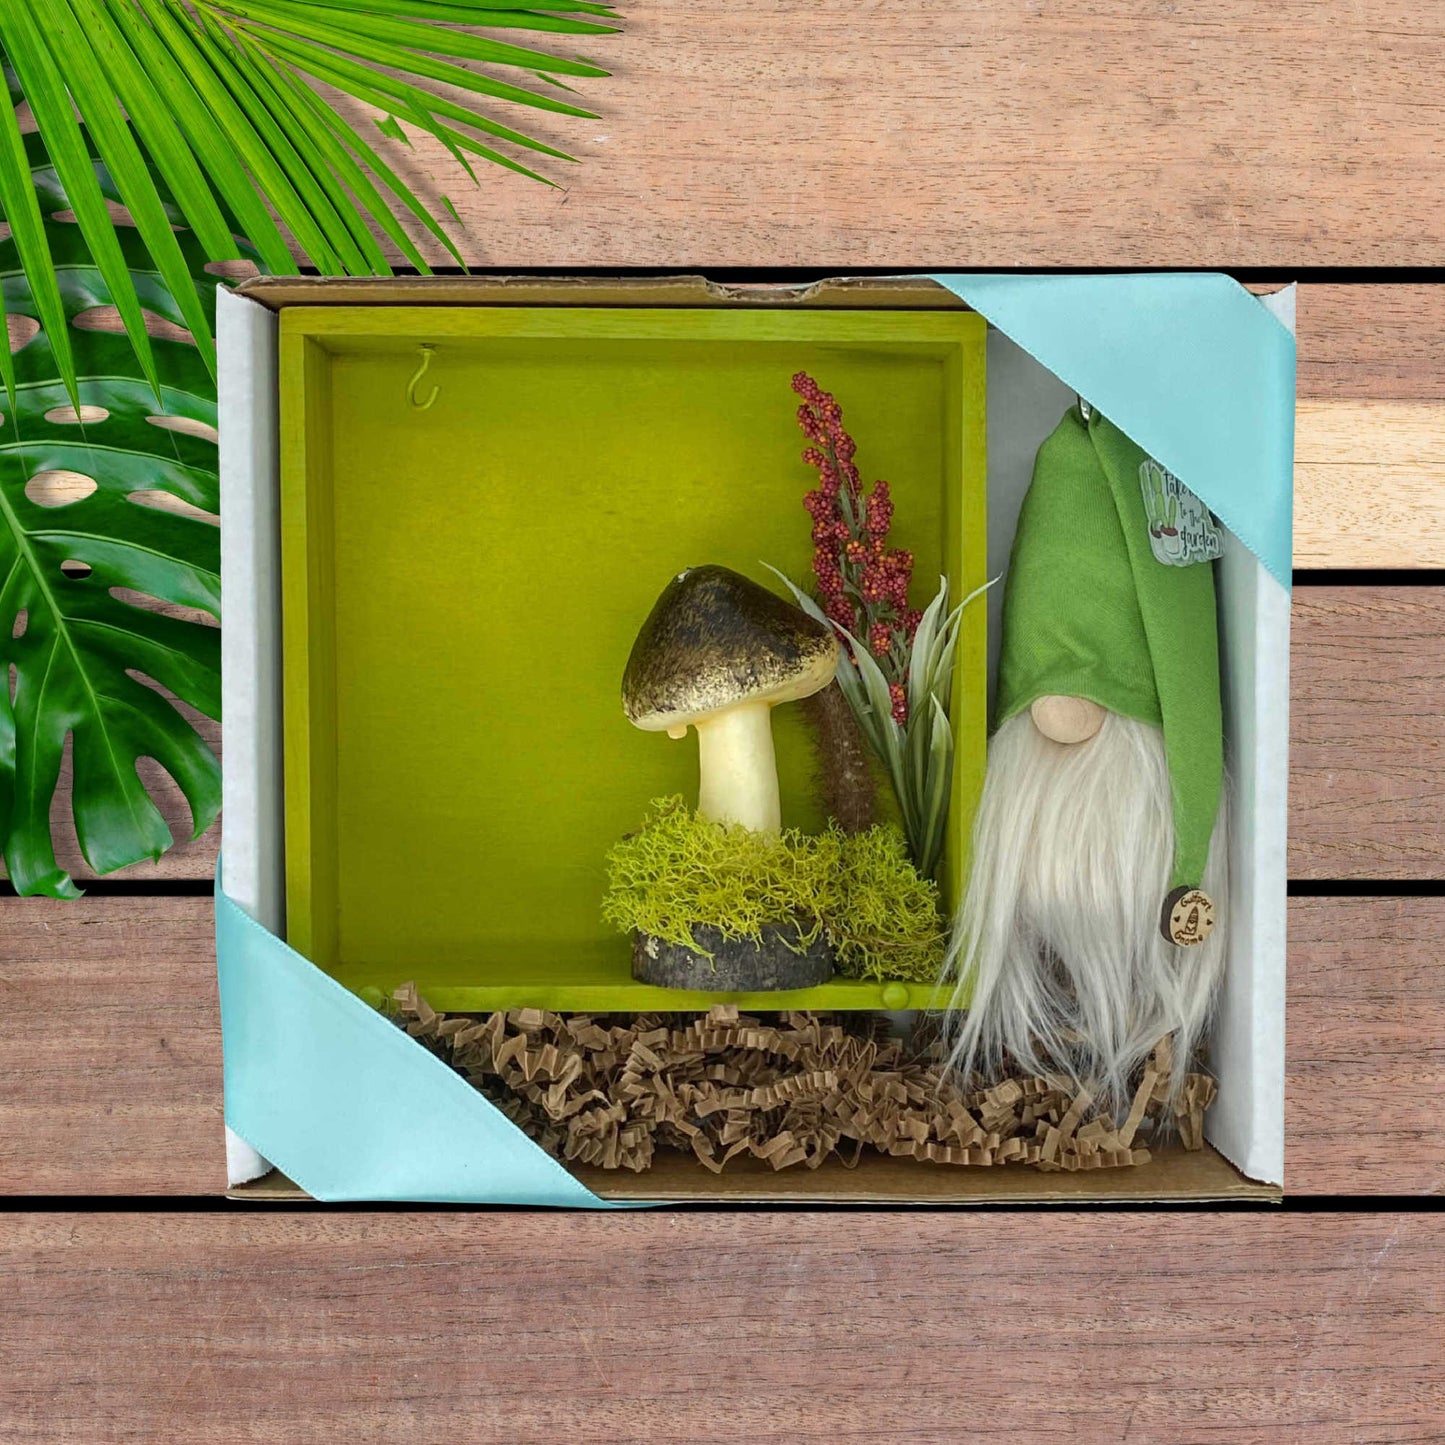 Gift Set - Woodland Enchanted Gift set with Gulfport Gnome™ - 4" Plush Gnome - Woodland Miniatures